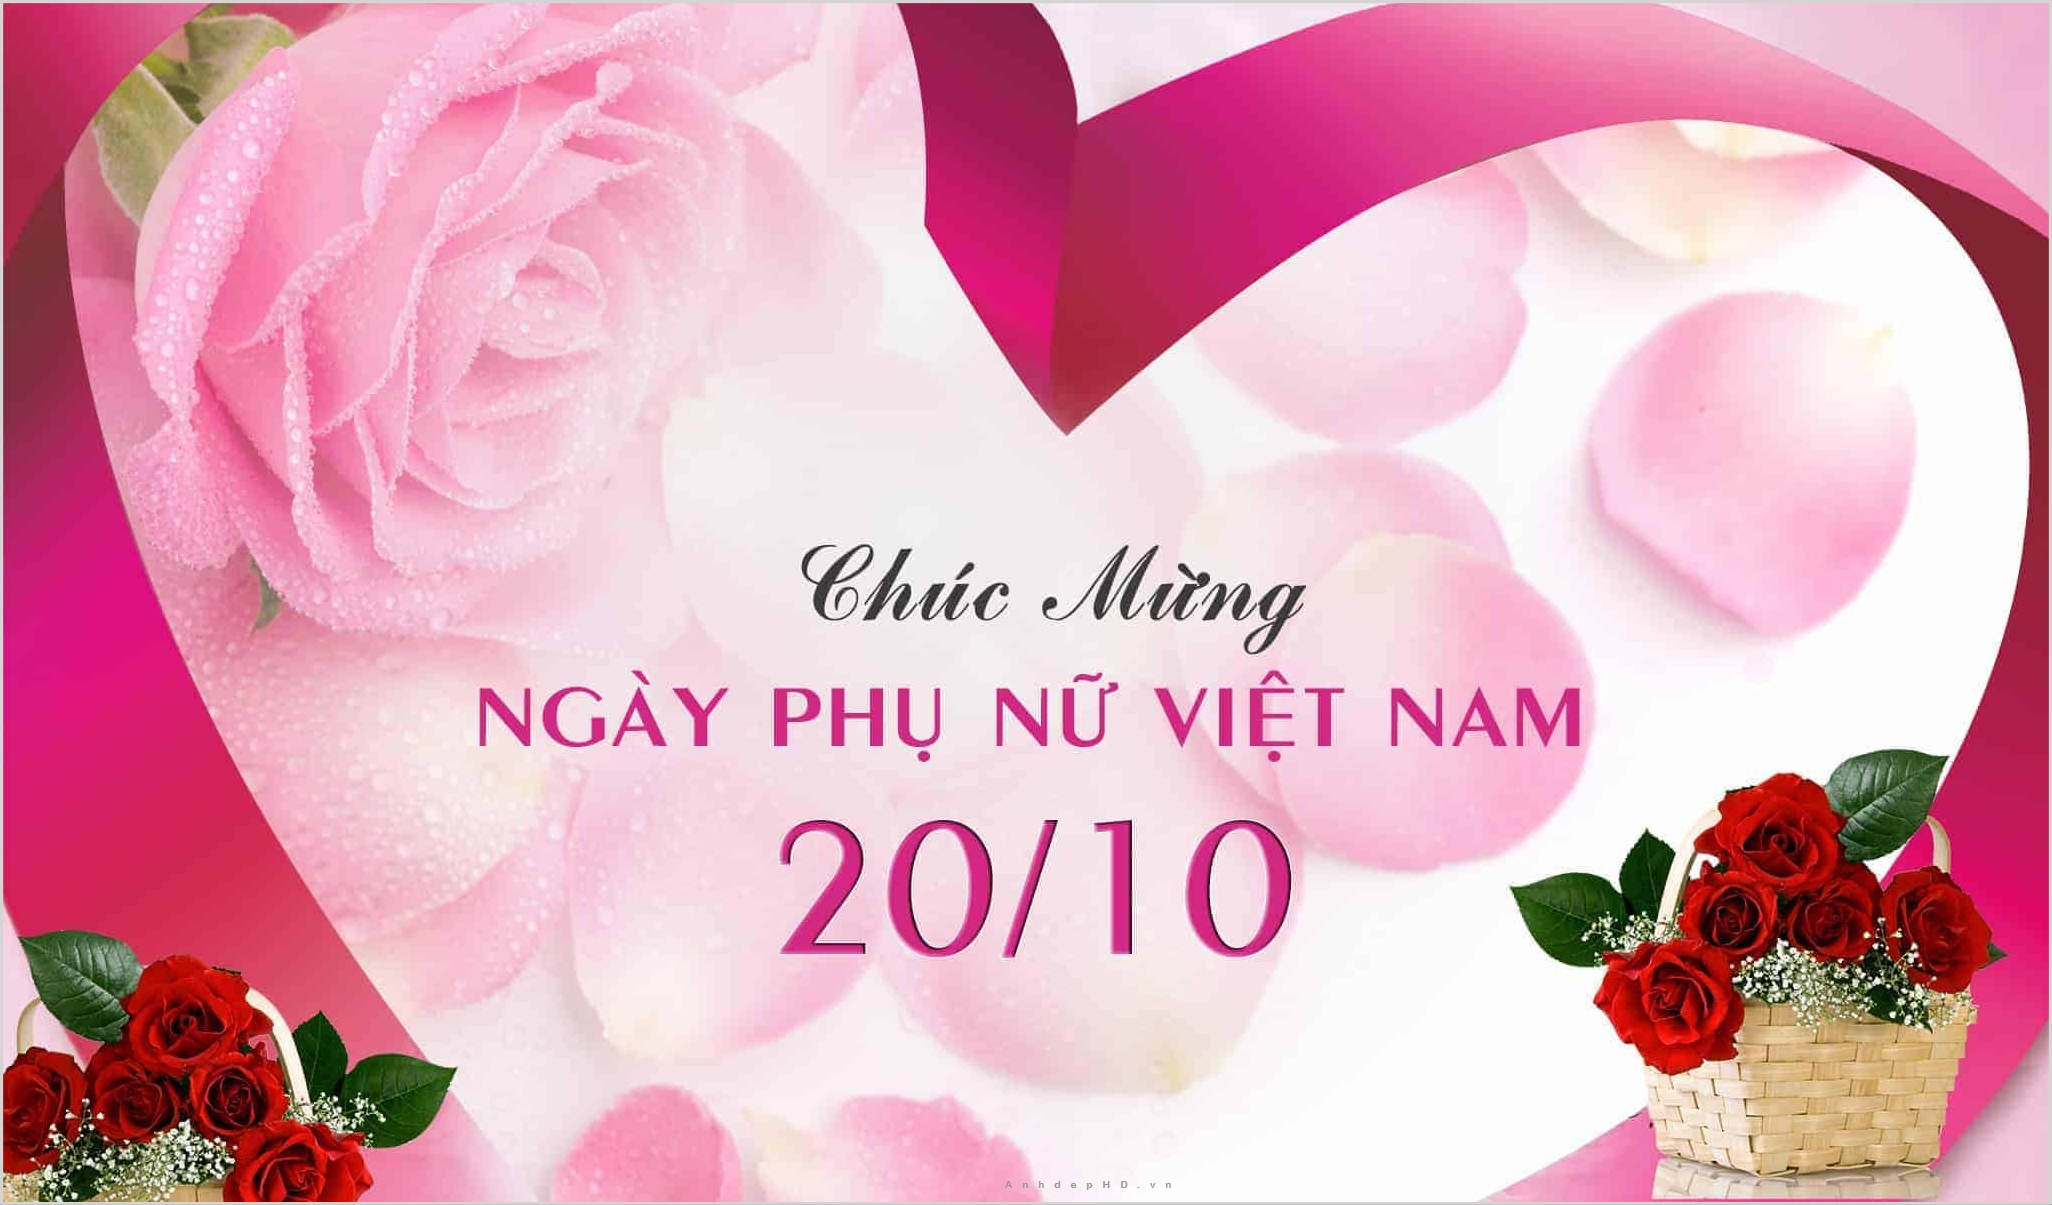 Hình ảnh đẹp Phụ nữ Việt Nam 20/10: Những hình ảnh tuyệt vời kỷ niệm Ngày Phụ nữ Việt Nam. Hãy tận hưởng trọn vẹn vẻ đẹp và sức mạnh của phụ nữ Việt Nam trong các khoản hình ảnh này.